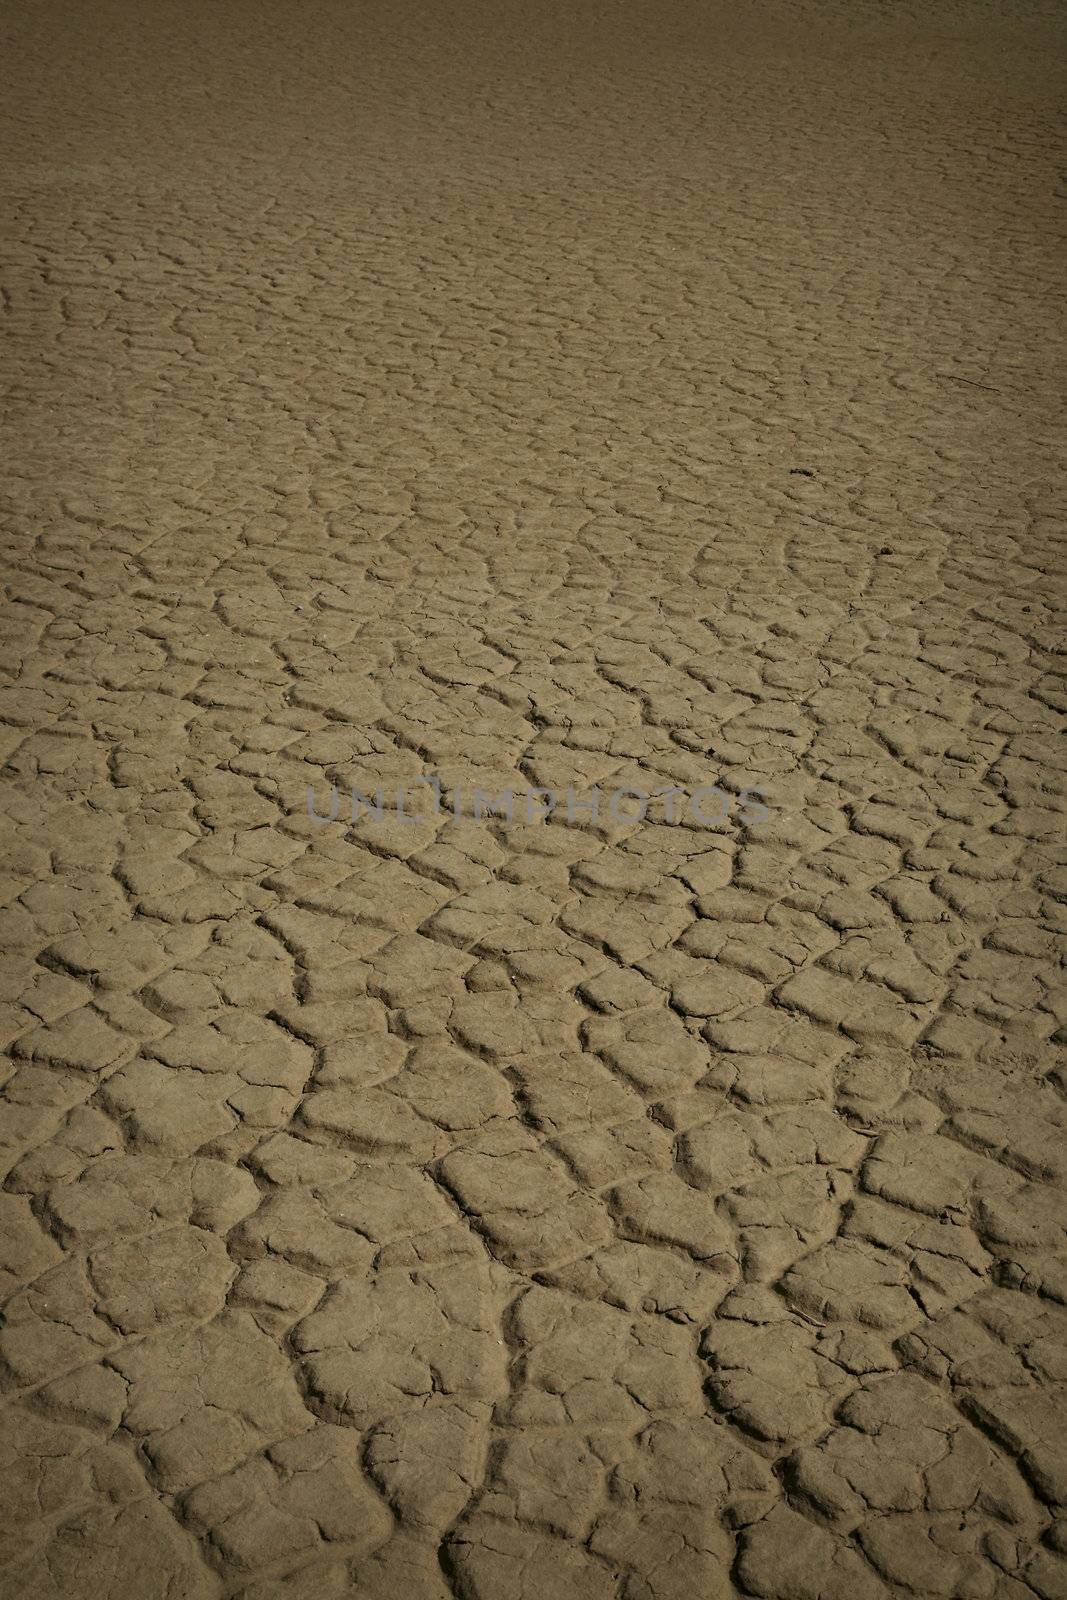 dry soil in a desert 